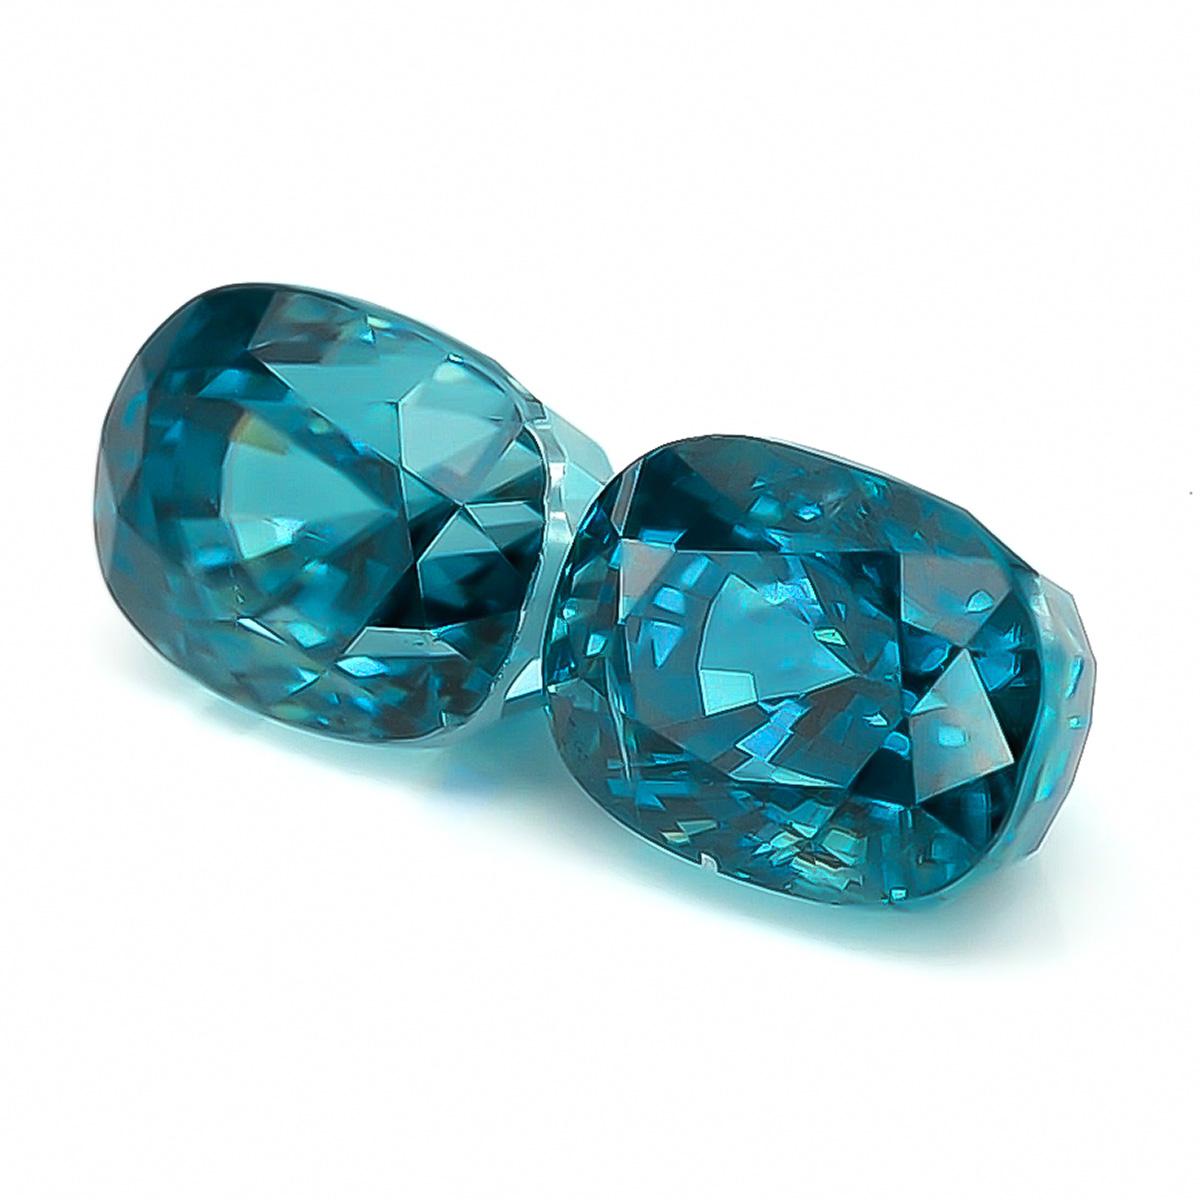 Entrez dans un monde d'élégance raffinée avec notre exceptionnelle paire de zircons bleus naturels. Totalisant 10,20 carats, ces pierres précieuses ont été méticuleusement façonnées en forme de coussin, mesurant 9,04 x 6,72 x 7,49 mm et 9,04 x 6,69